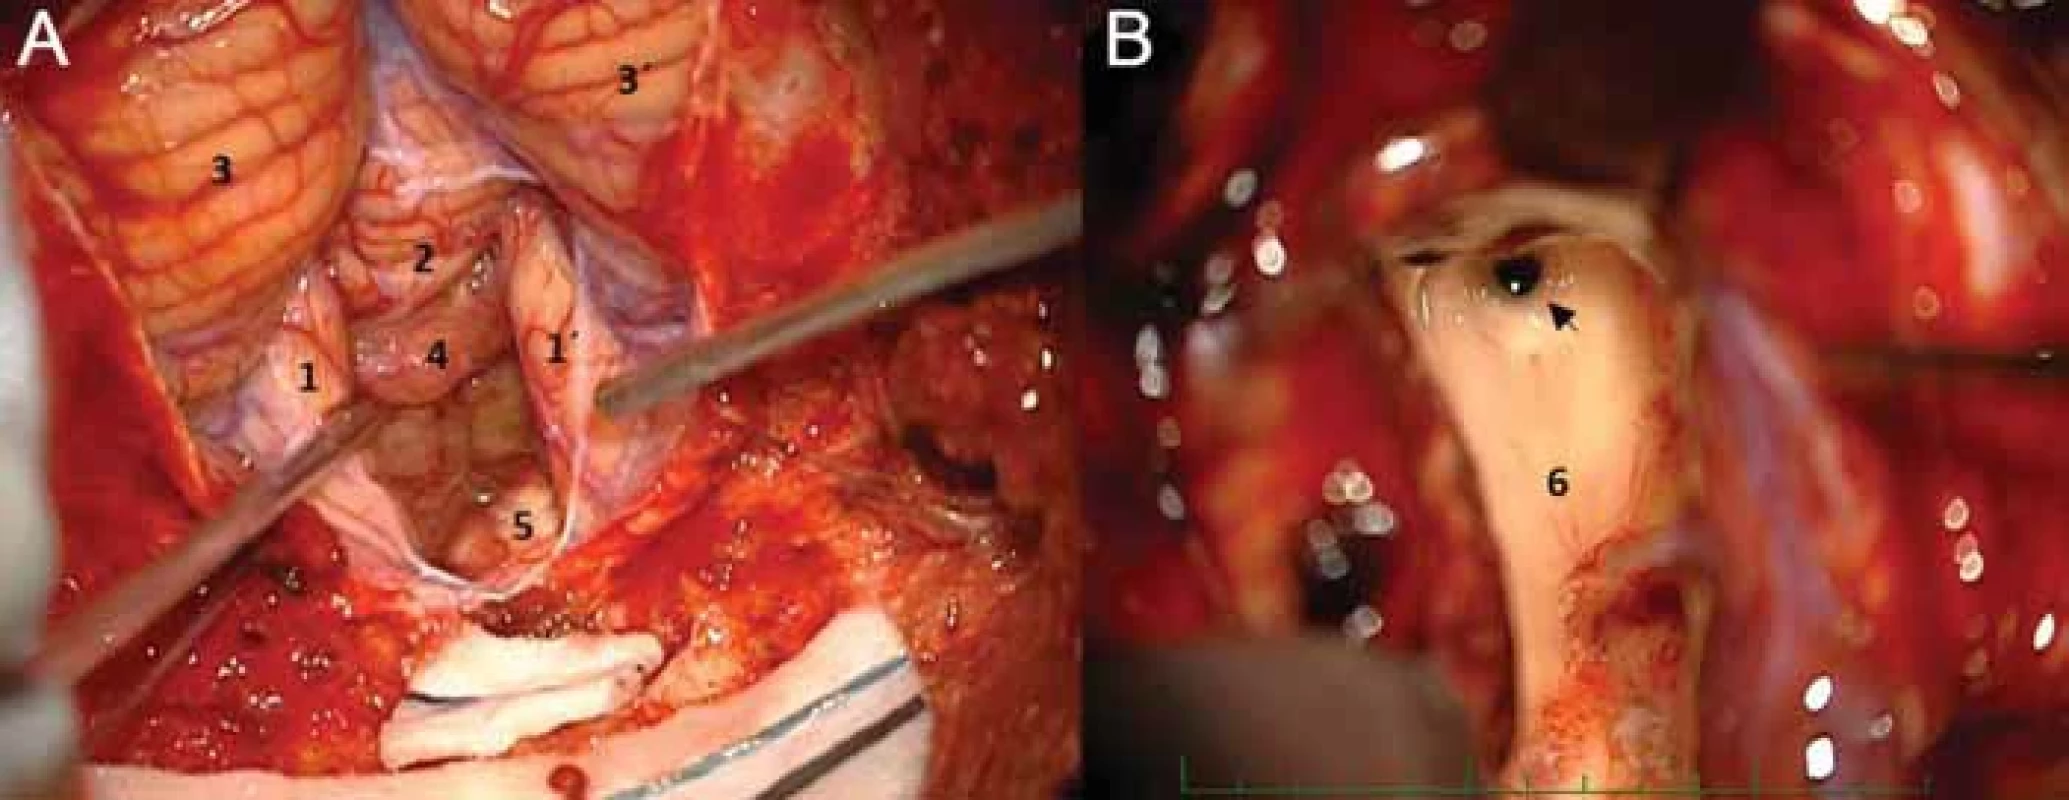 Operace plexus papillomu IV. komory z telovelárního přístupu – (A) vallecula cerebelli vyplněná tumorem; (B) pohled do akveductus Sylvii po dokončení resekce s náletem tumoru na spodině IV. komory.